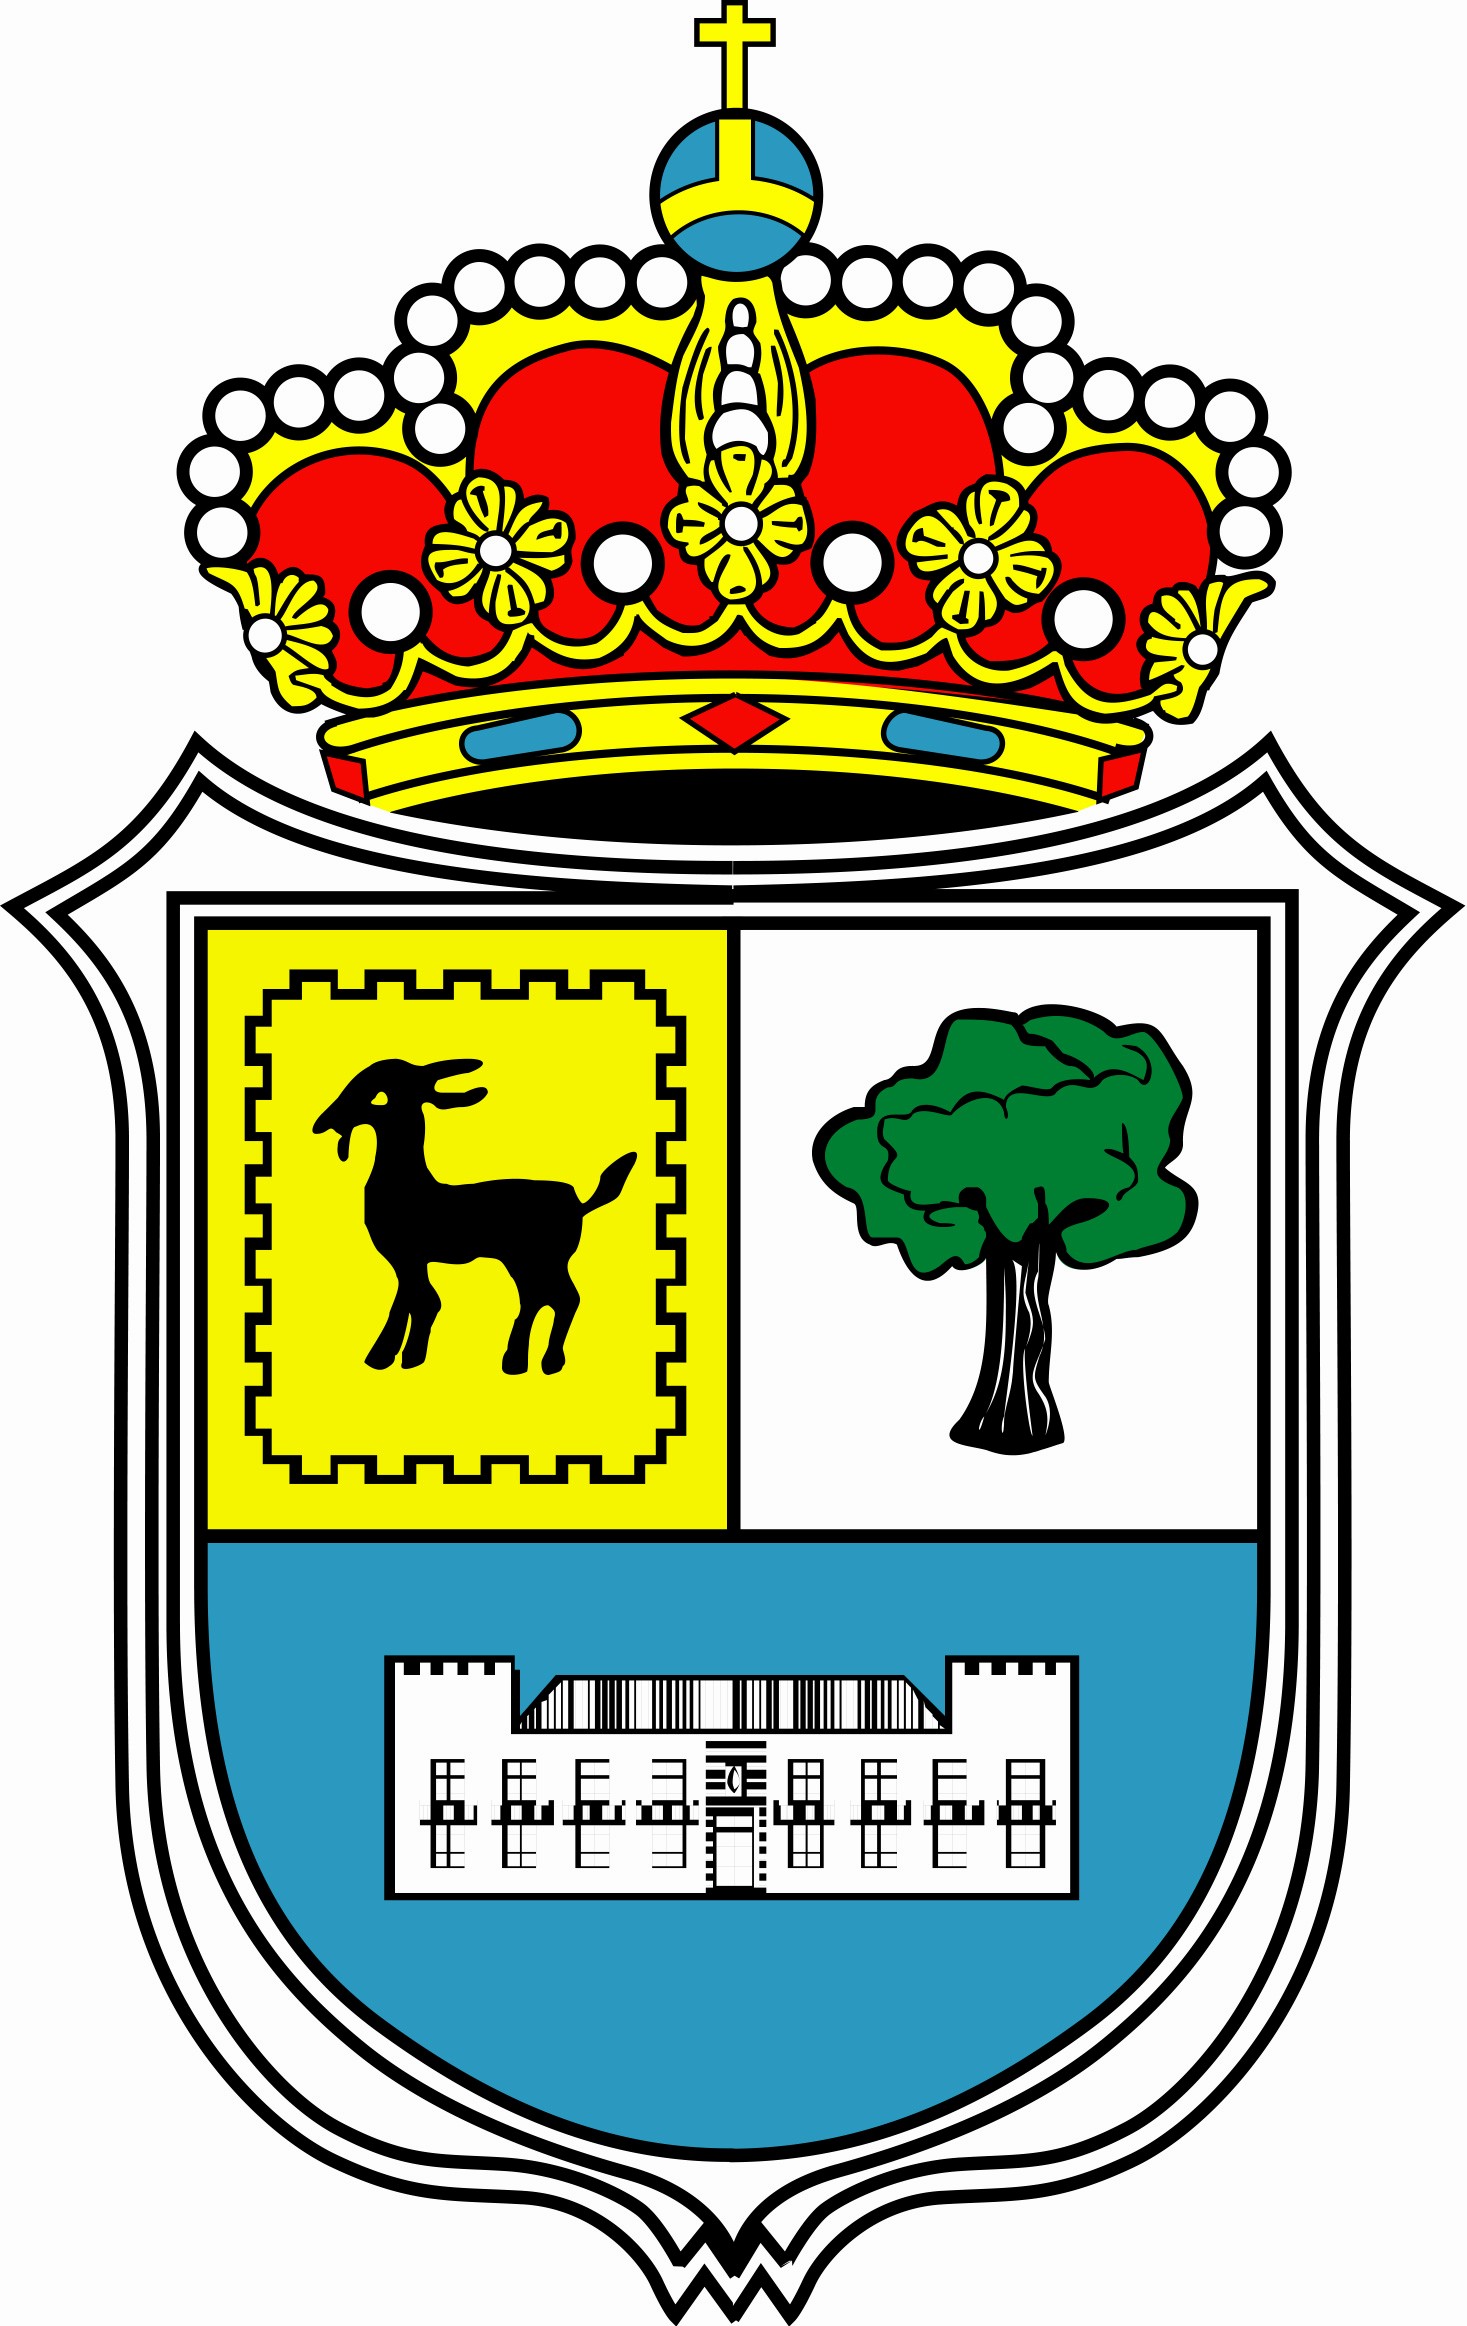 Escudo del Ayuntamiento de La Oliva.